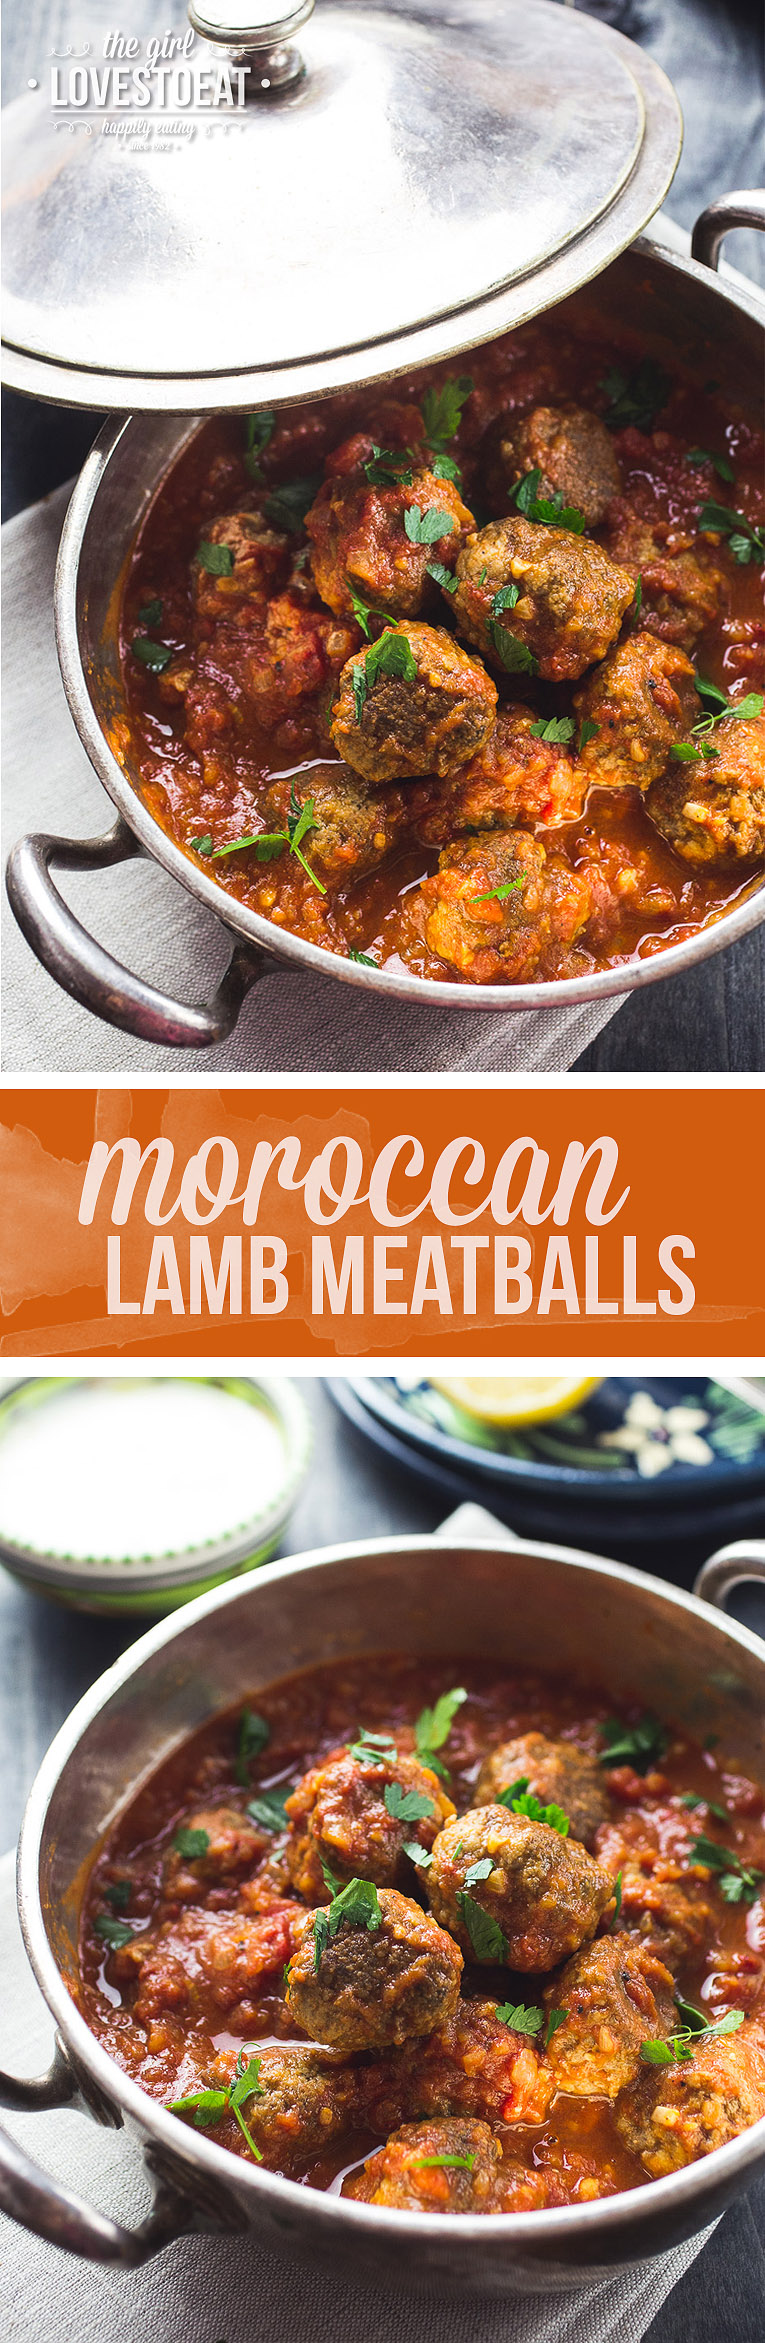 Moroccan Lamb Meatballs { thegirllovestoeat.com }